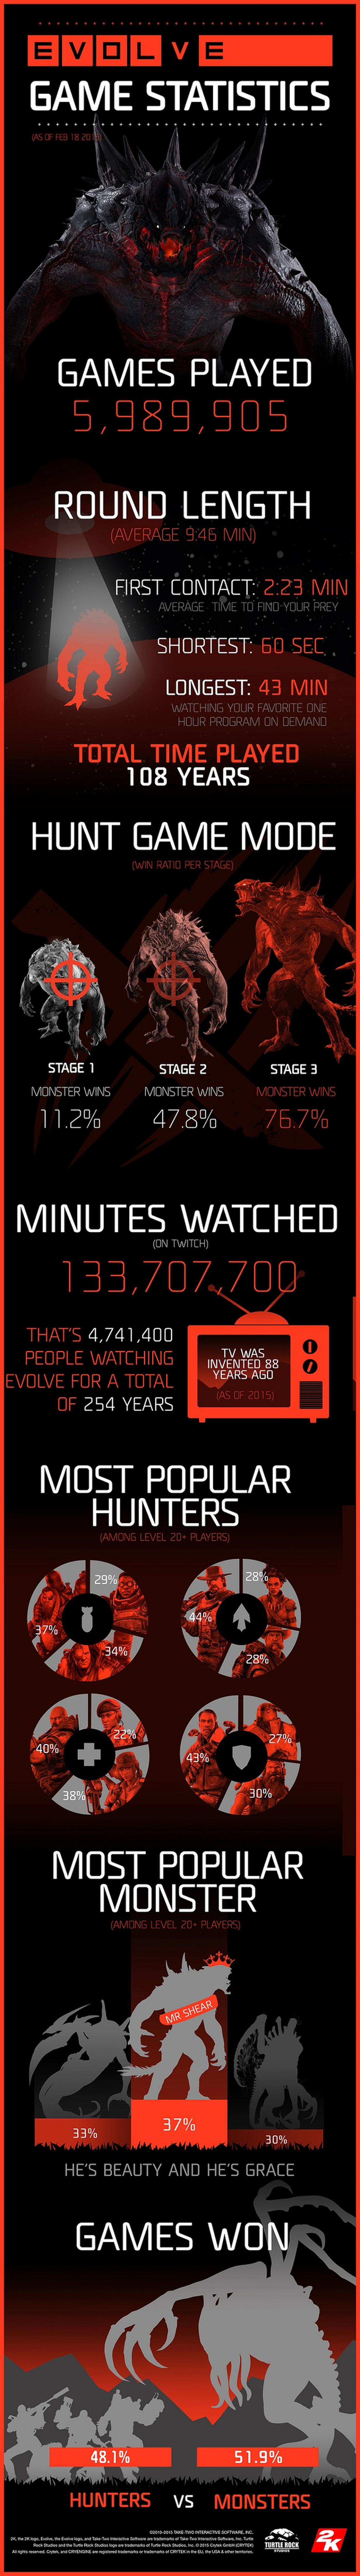 Evolve celebra casi 6 millones de partidas en su primera semana